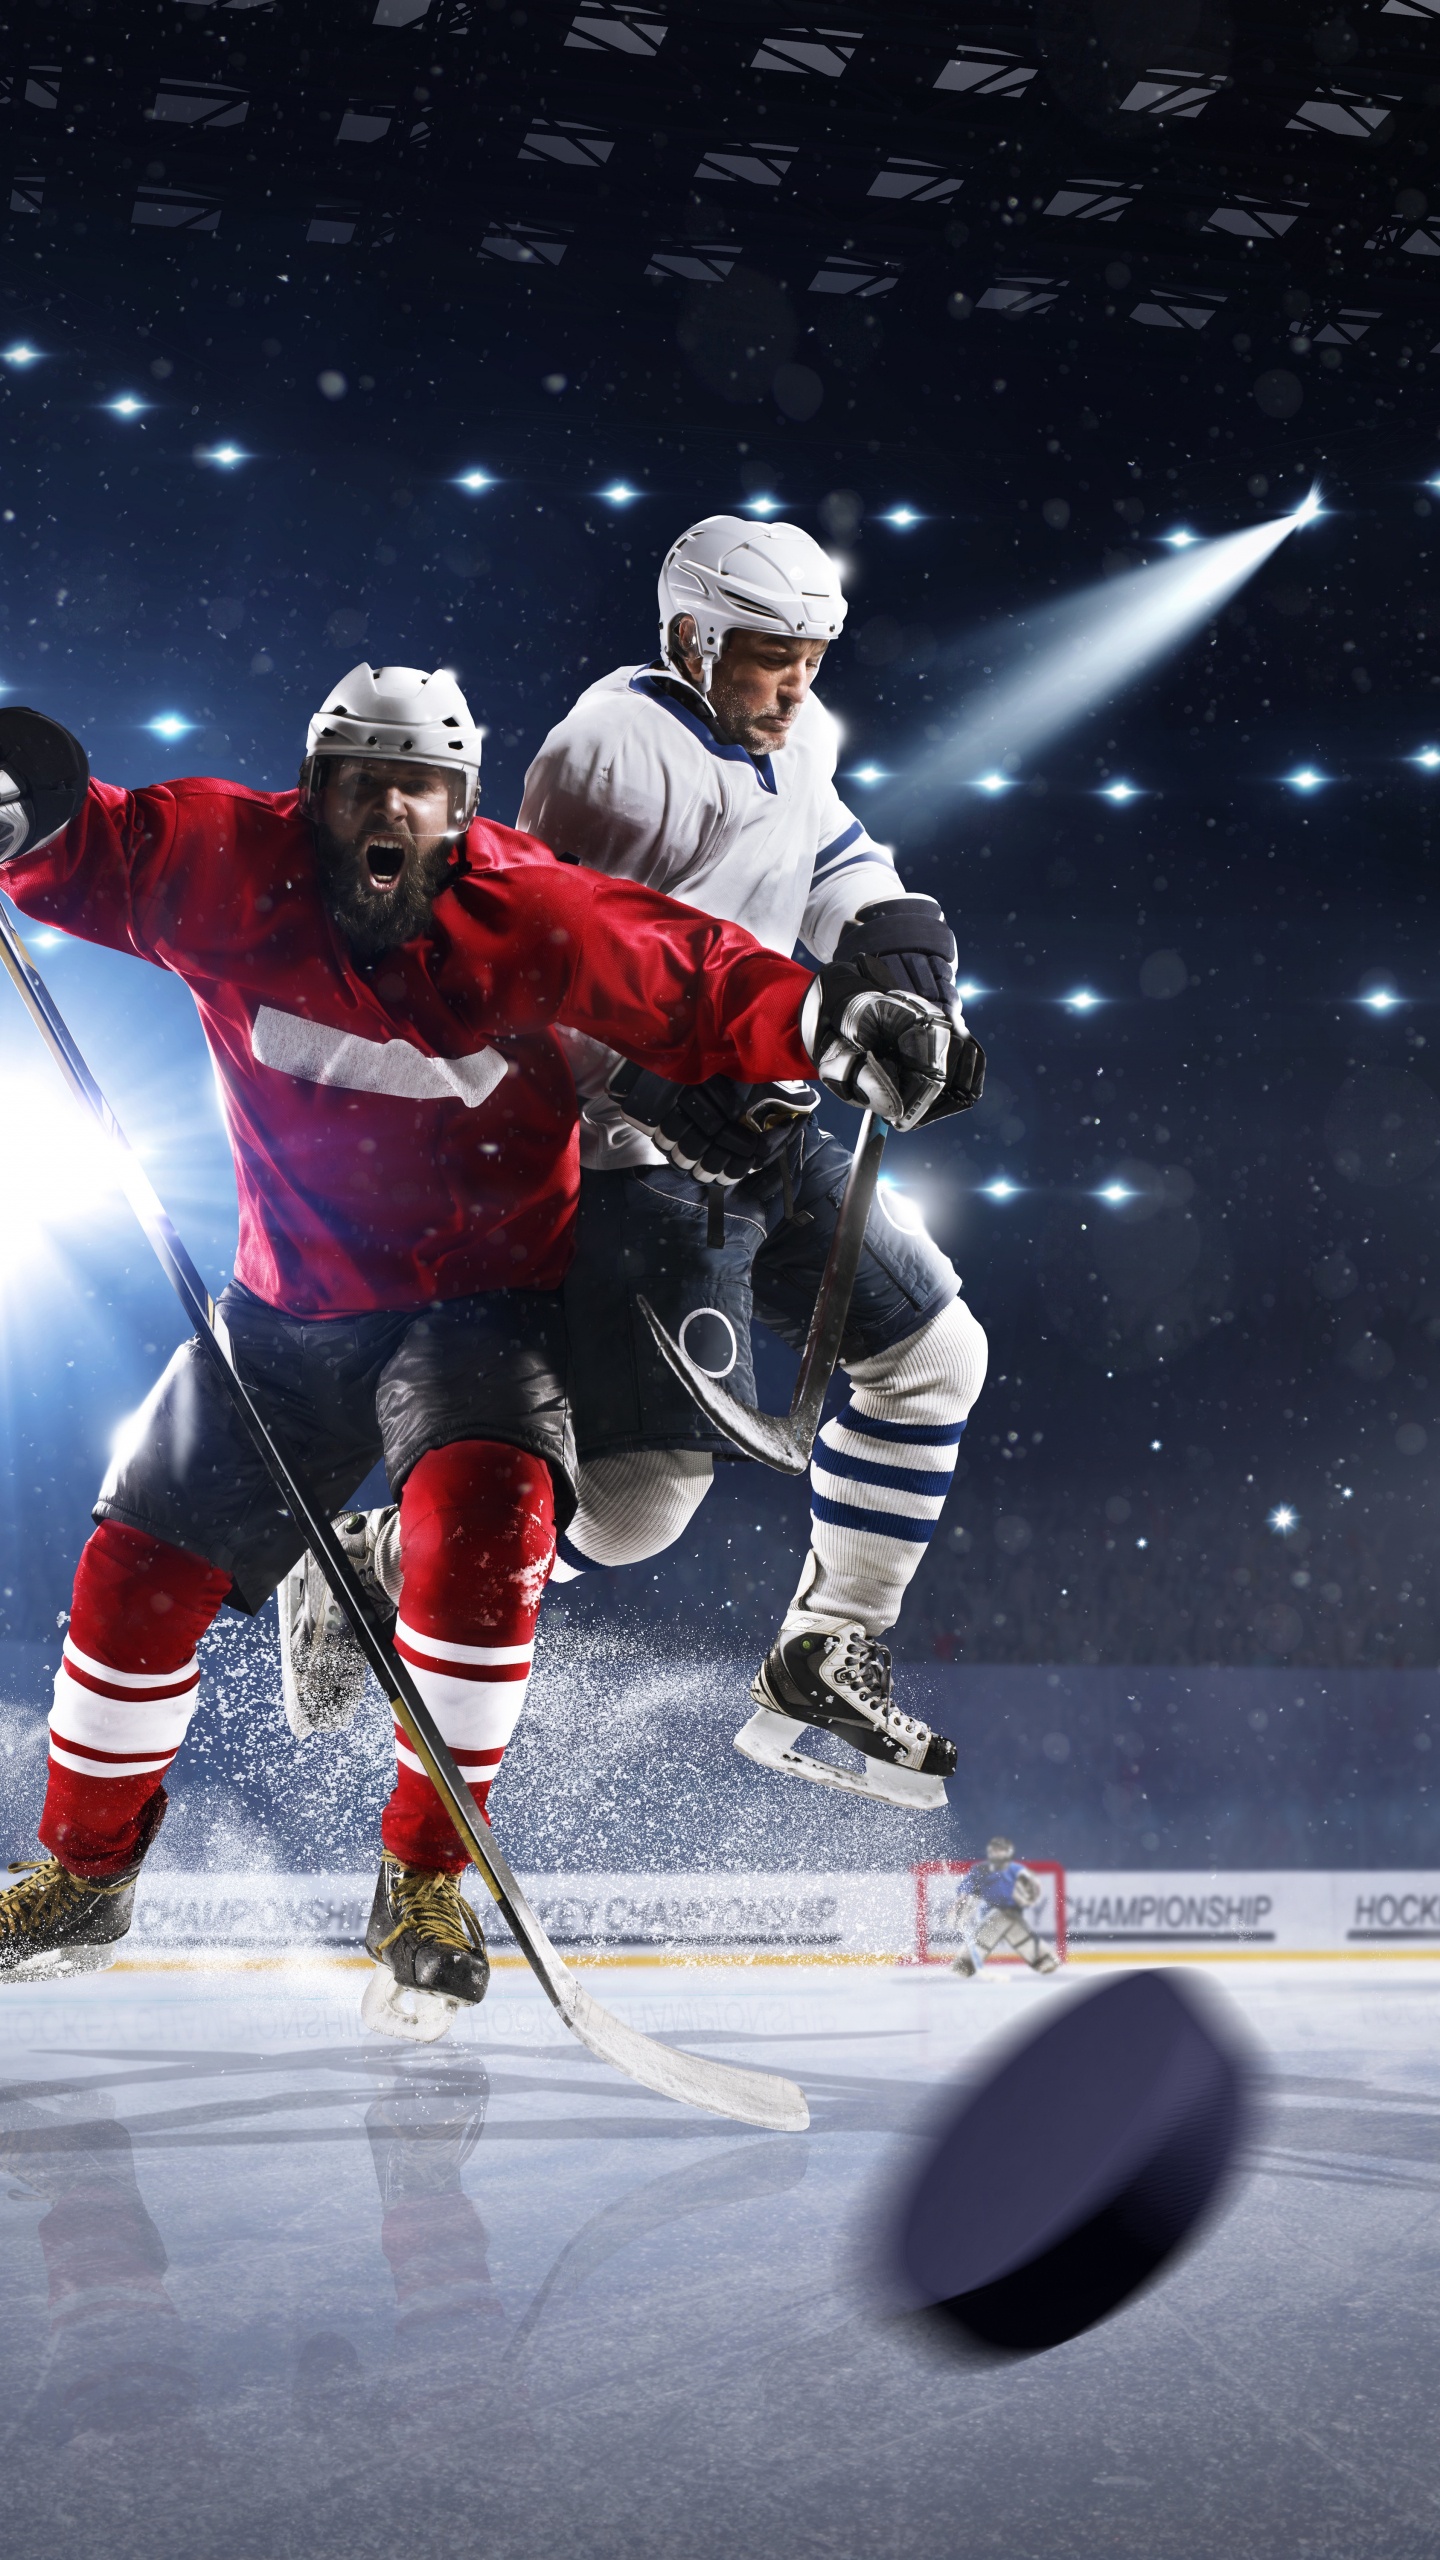 Eishockeyspieler Auf Dem Eishockeyfeld. Wallpaper in 1440x2560 Resolution